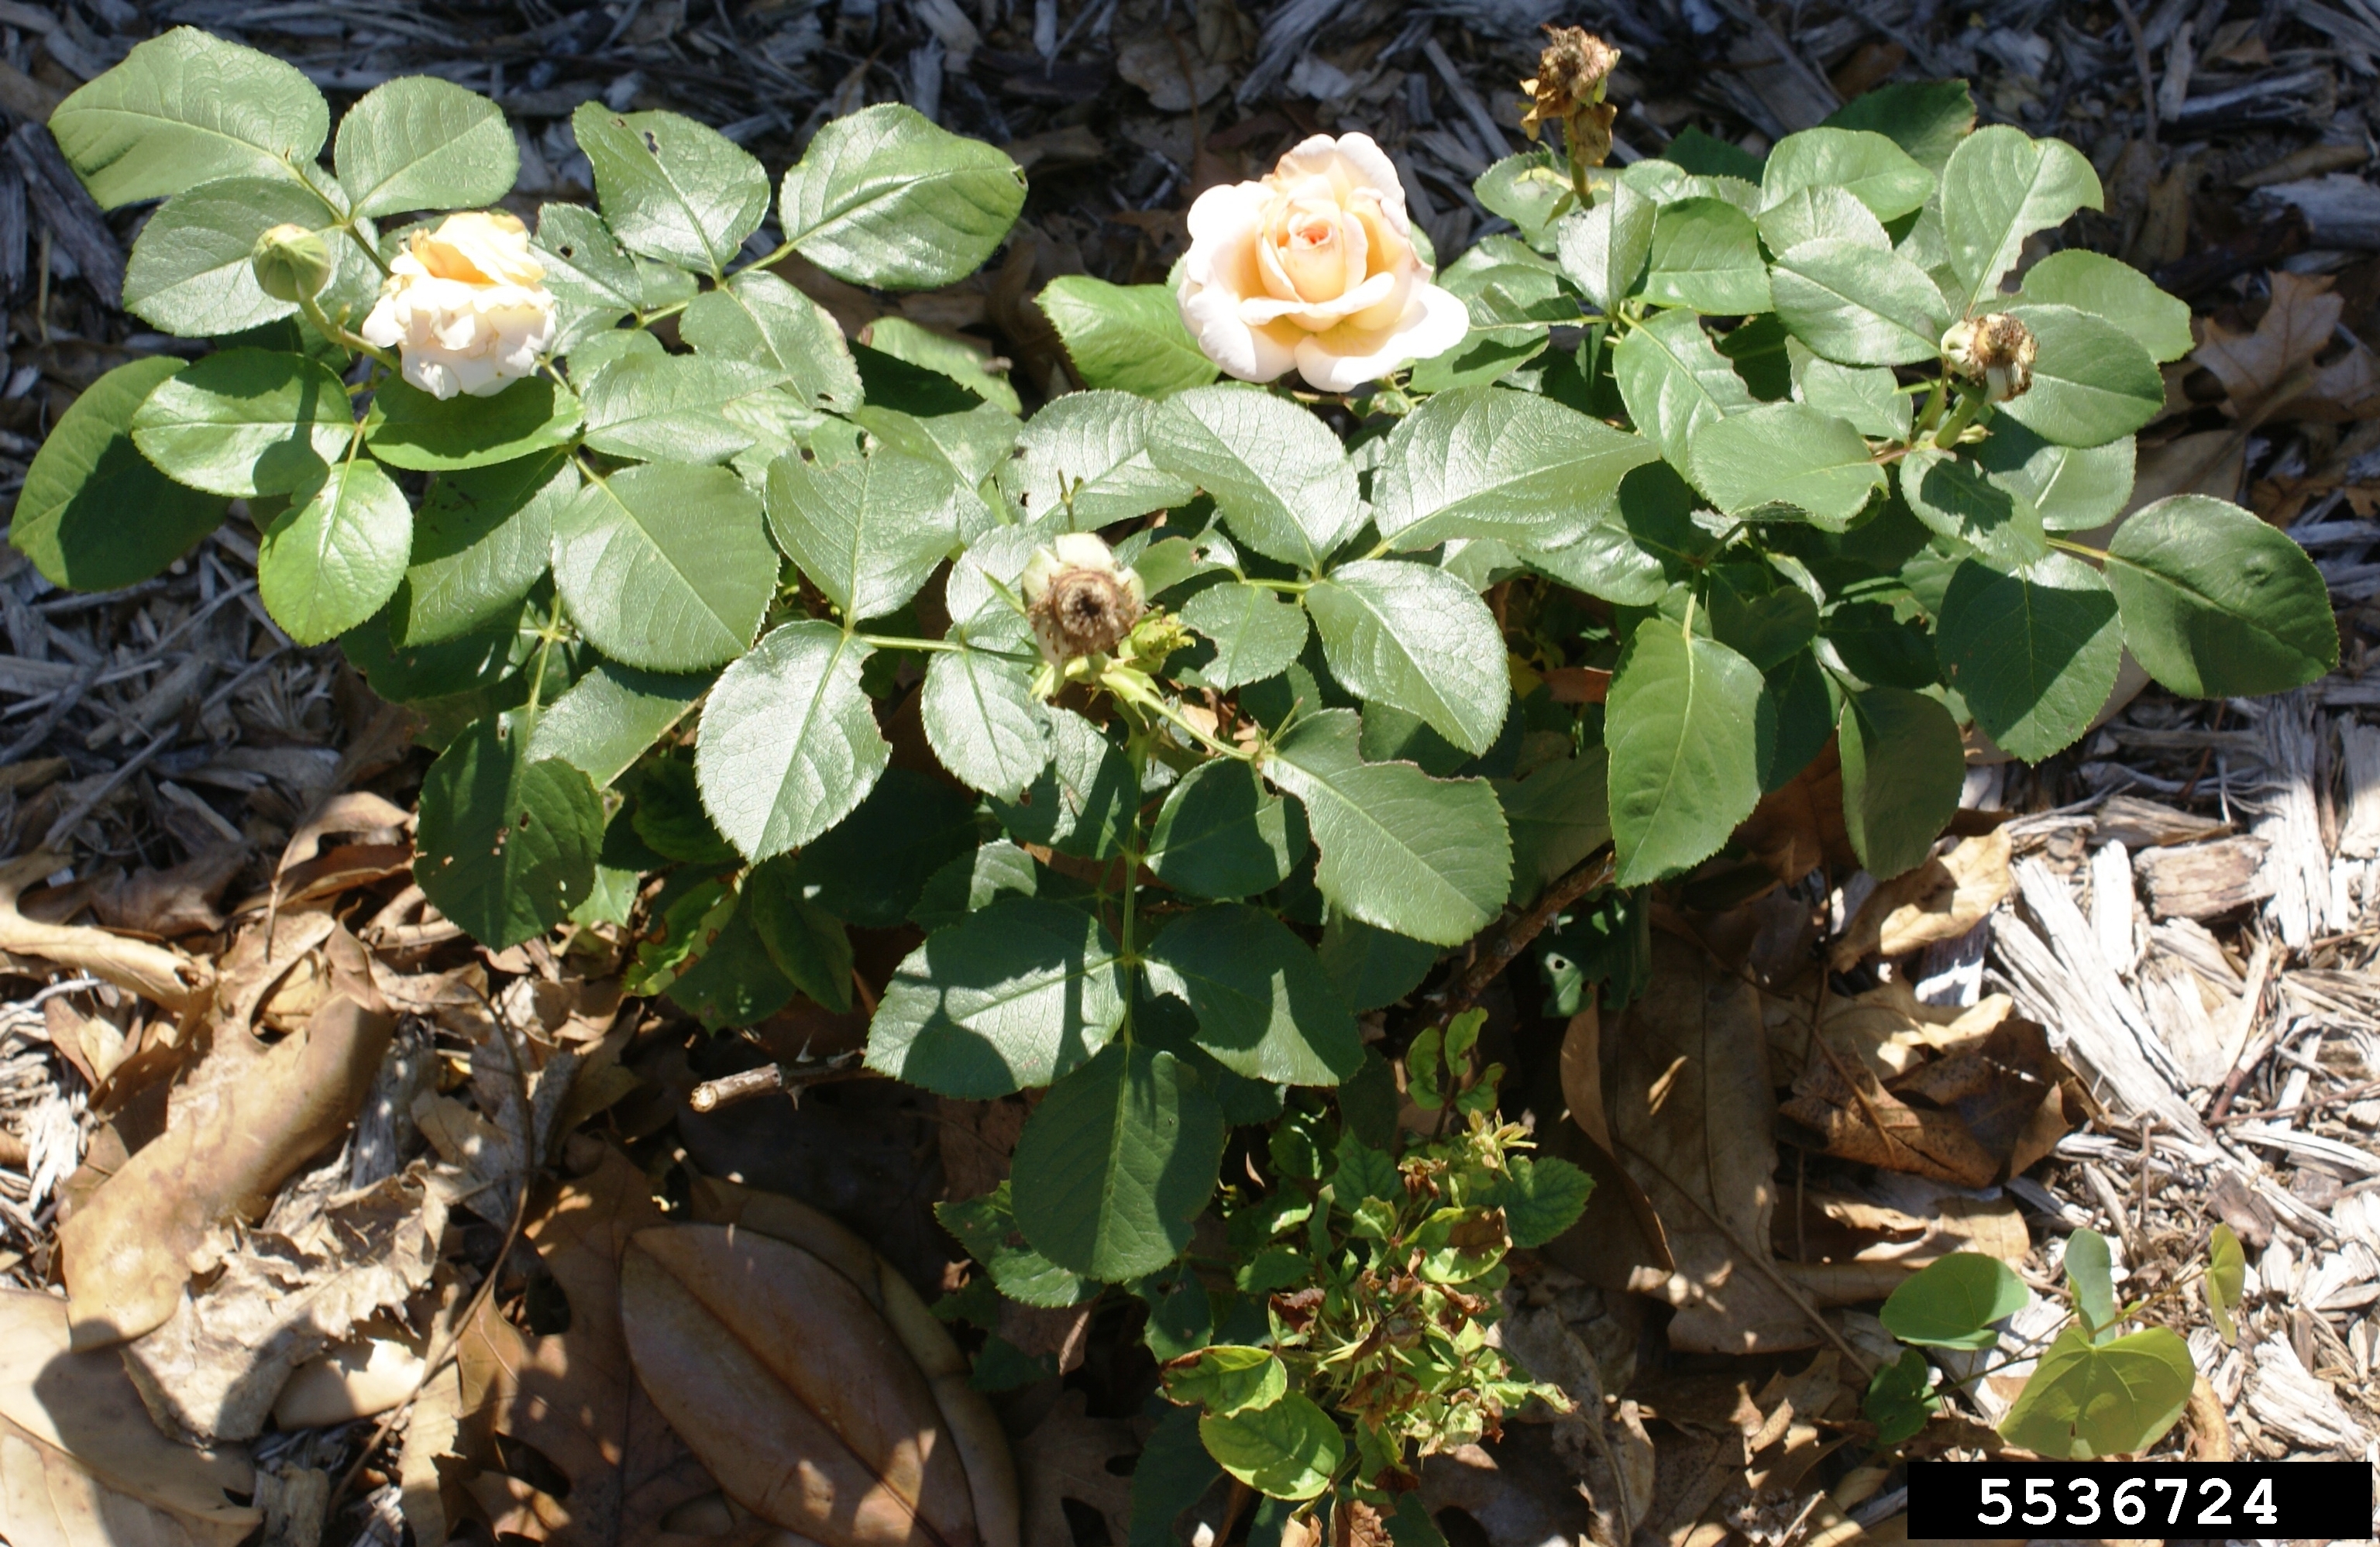 Rose rosette disease on plant